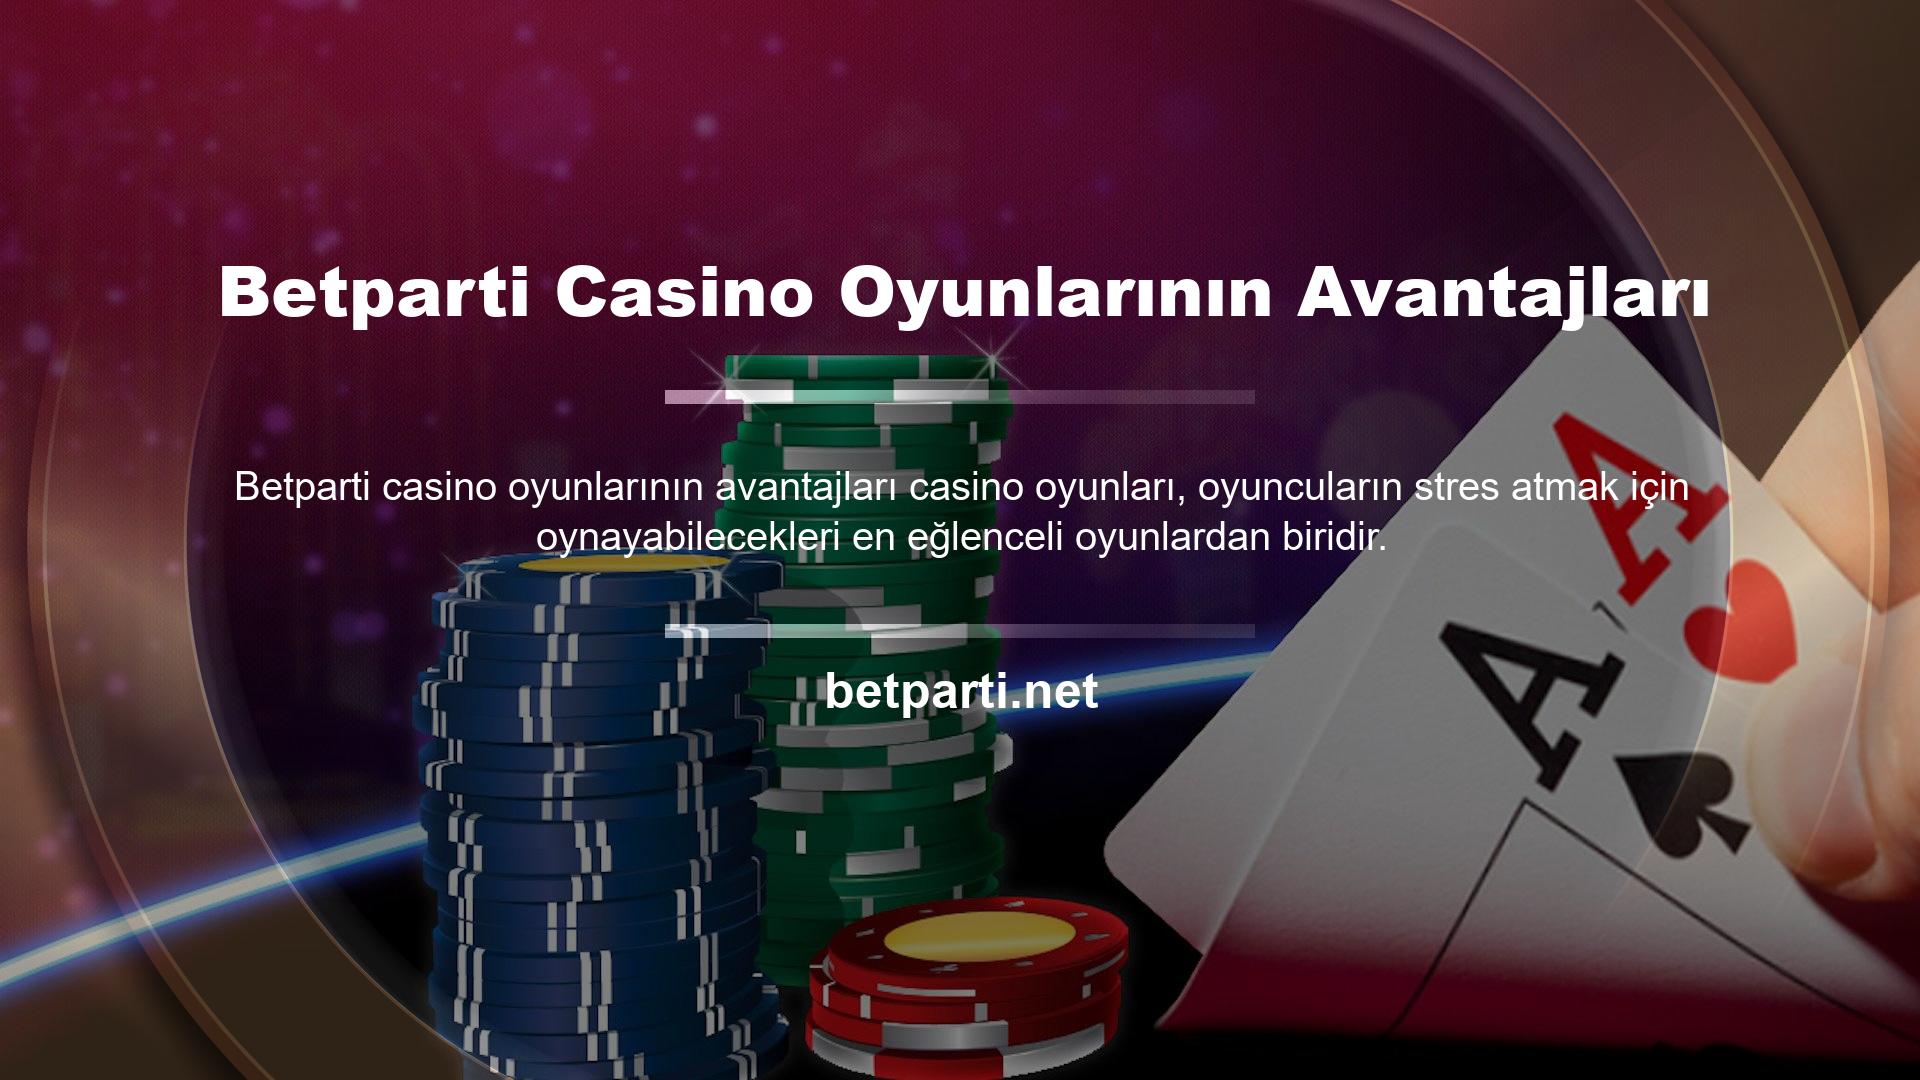 Oyuncular casino oyunları oynarken risk miktarını bütçelerine ve stratejilerine göre ayarlayabilirler